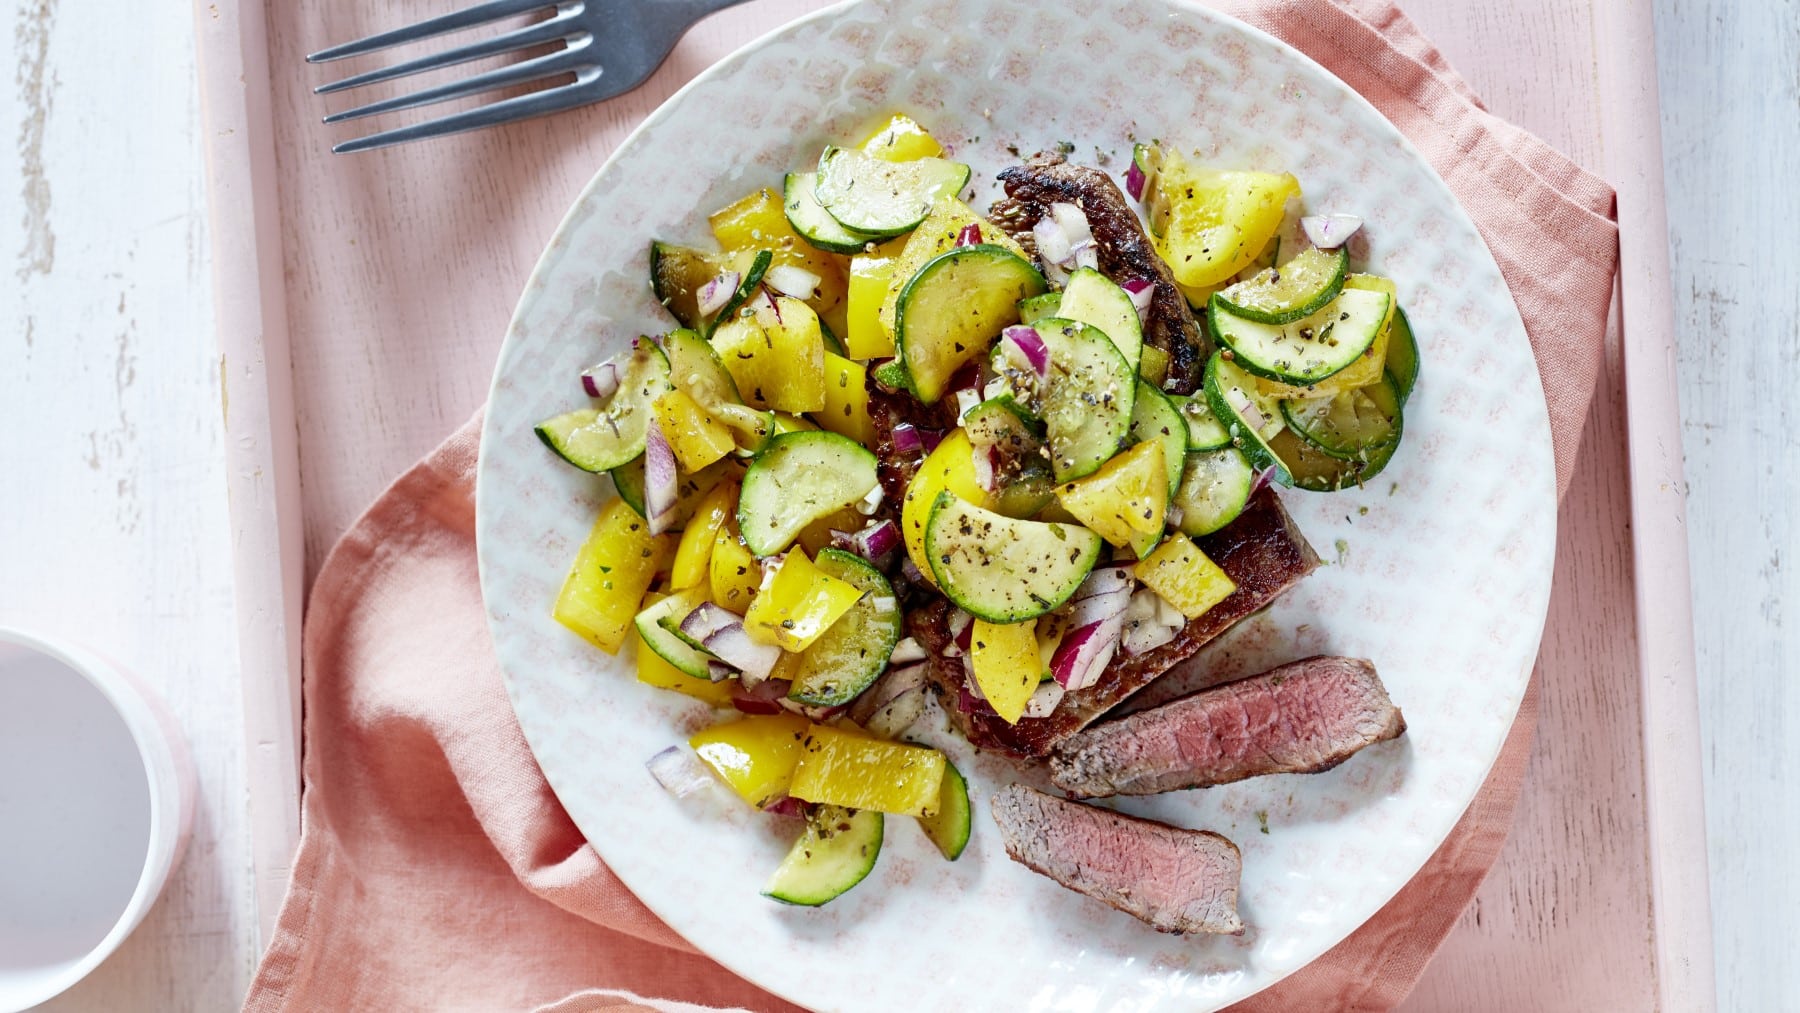 In Streifen geschnittenes Steak mit Mittelmeergemüse also Paprika und Zucchini auf einem runden Teller vor hellem Hintergrund